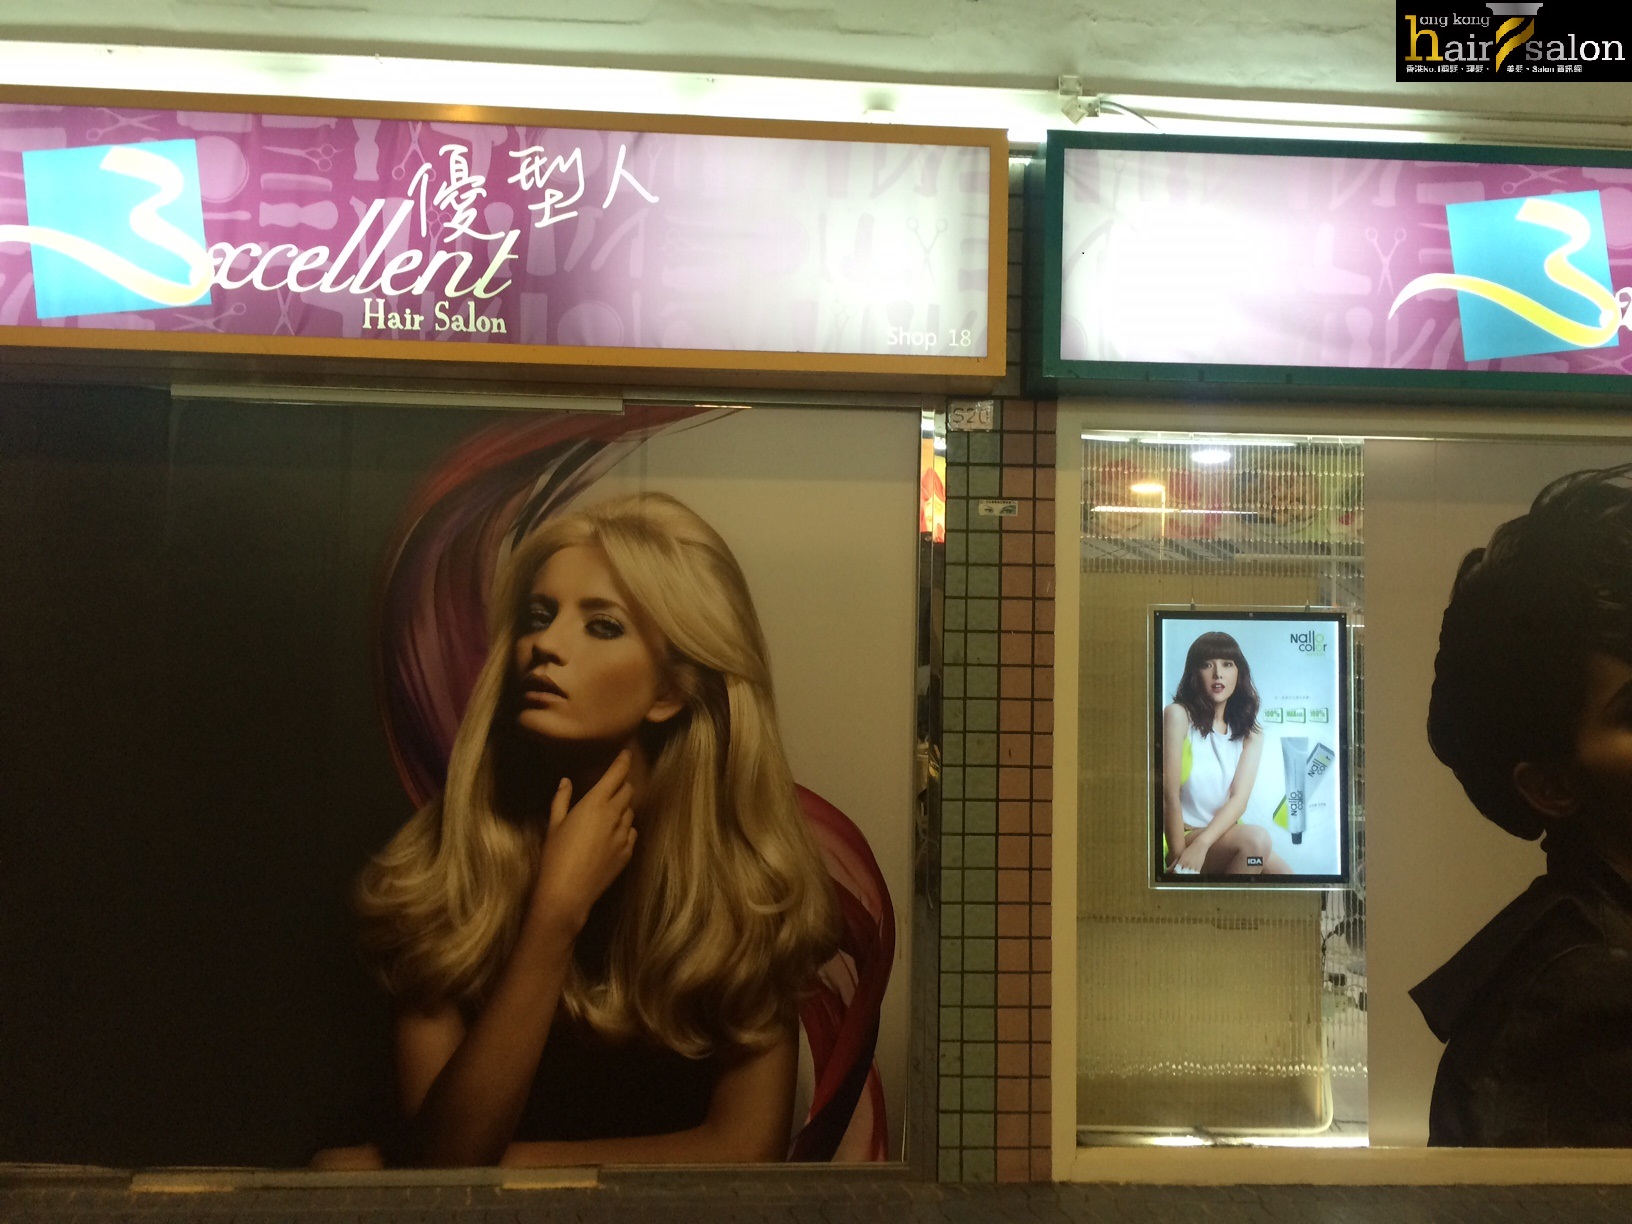 香港美髮網 HK Hair Salon 髮型屋Salon / 髮型師: 優型人 Excelent Hair Salon